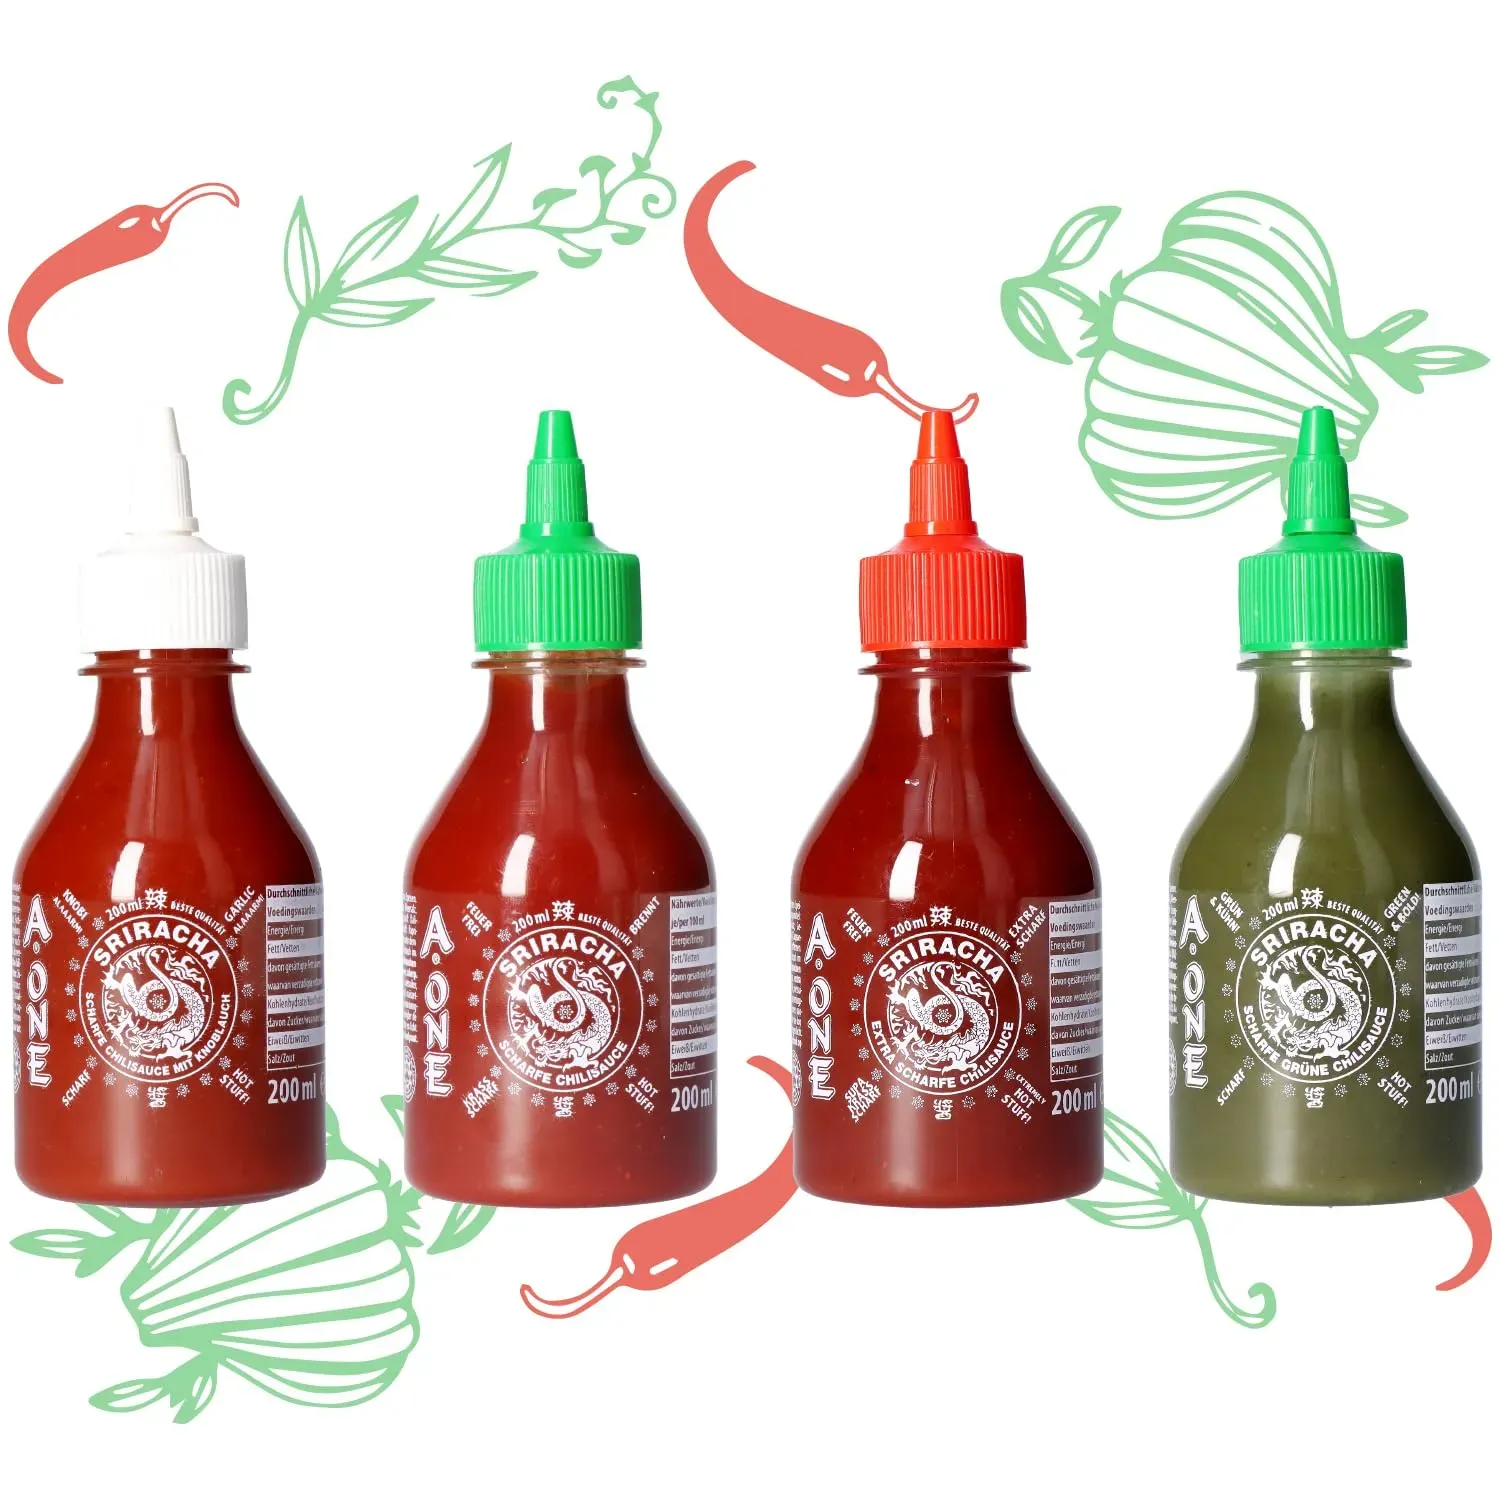 A-One Sriracha Sauce 4 x 200ml - 4 Geschmacksrichtungen - Klassik Scharf, Super Hot, Knoblauch, Gr√on